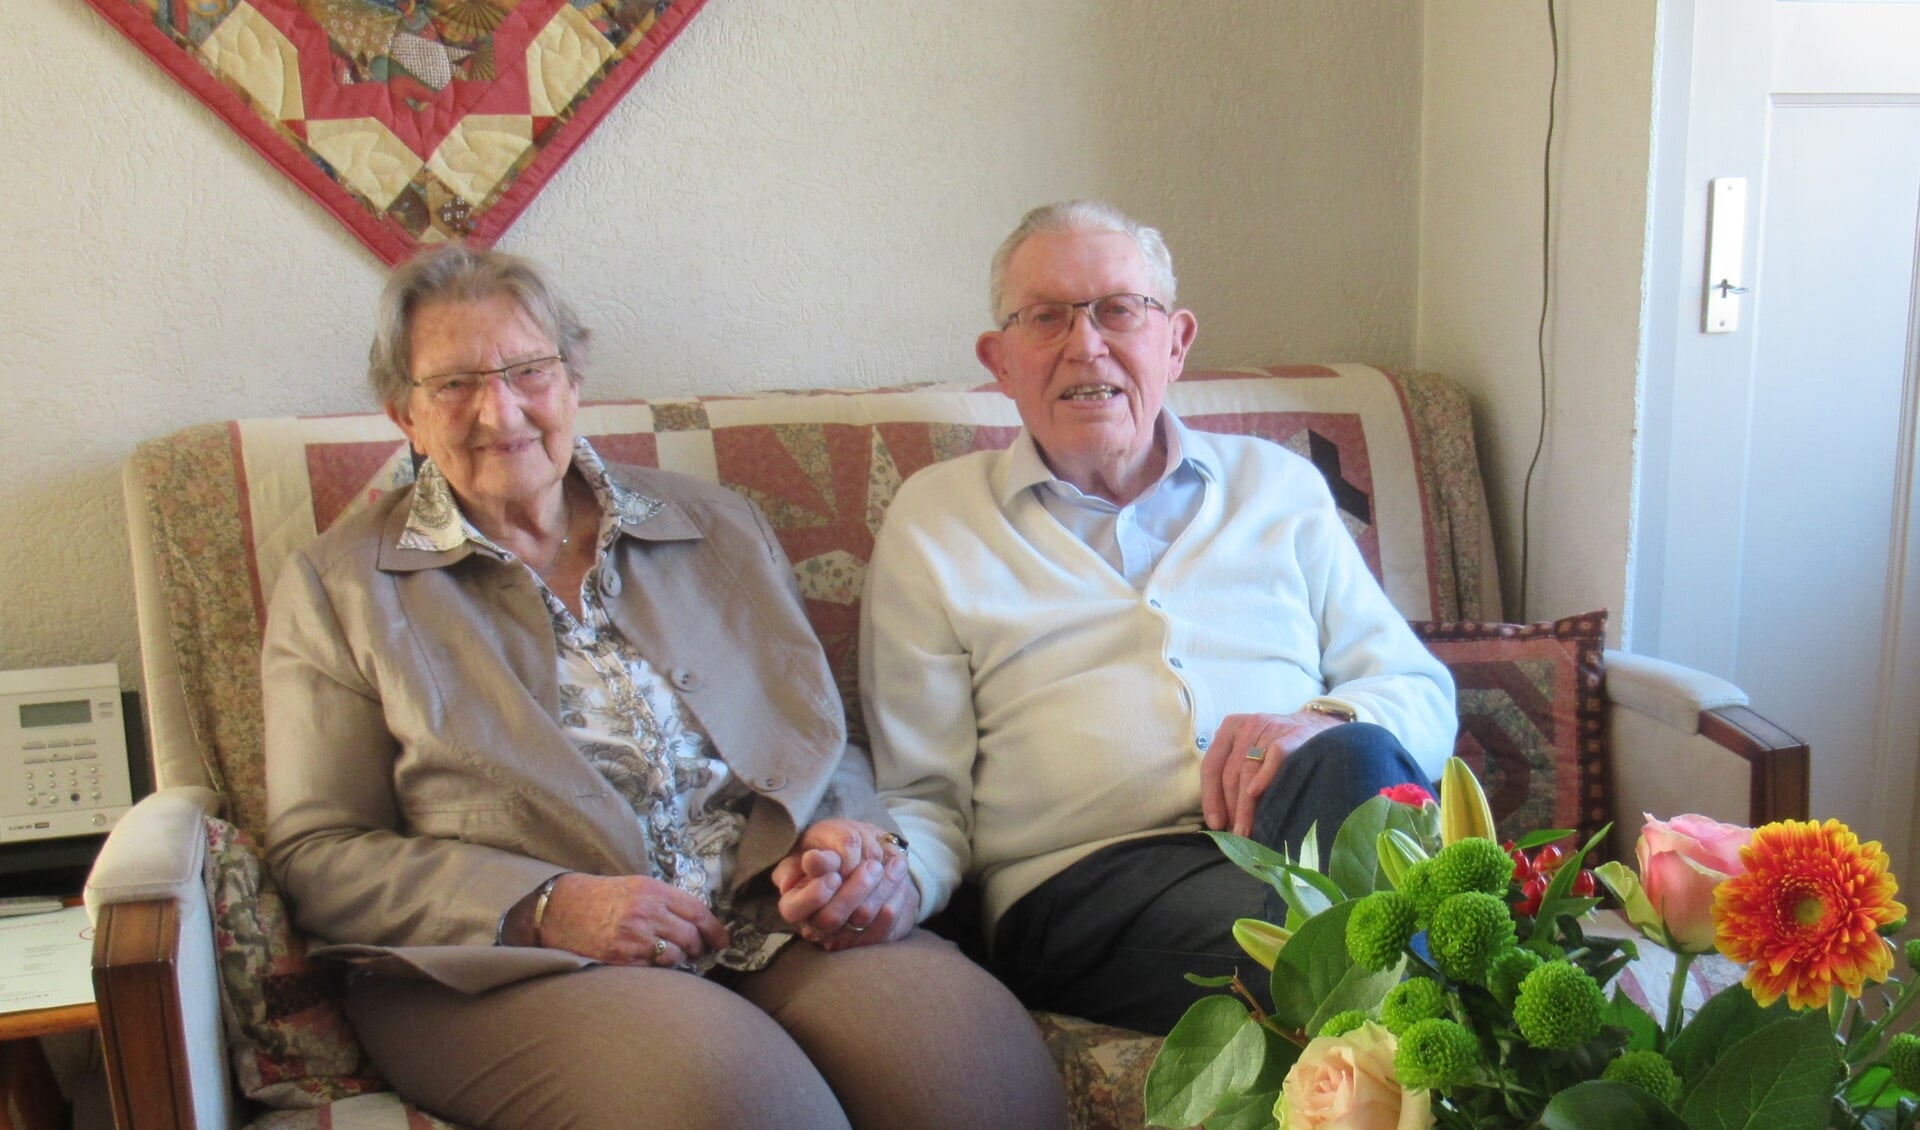 Het echtpaar Blok-van ’t Zet kwam naar Rijssen door een vacature voor een directeur van de huishoudschool Het Veerenland in Rijssen.